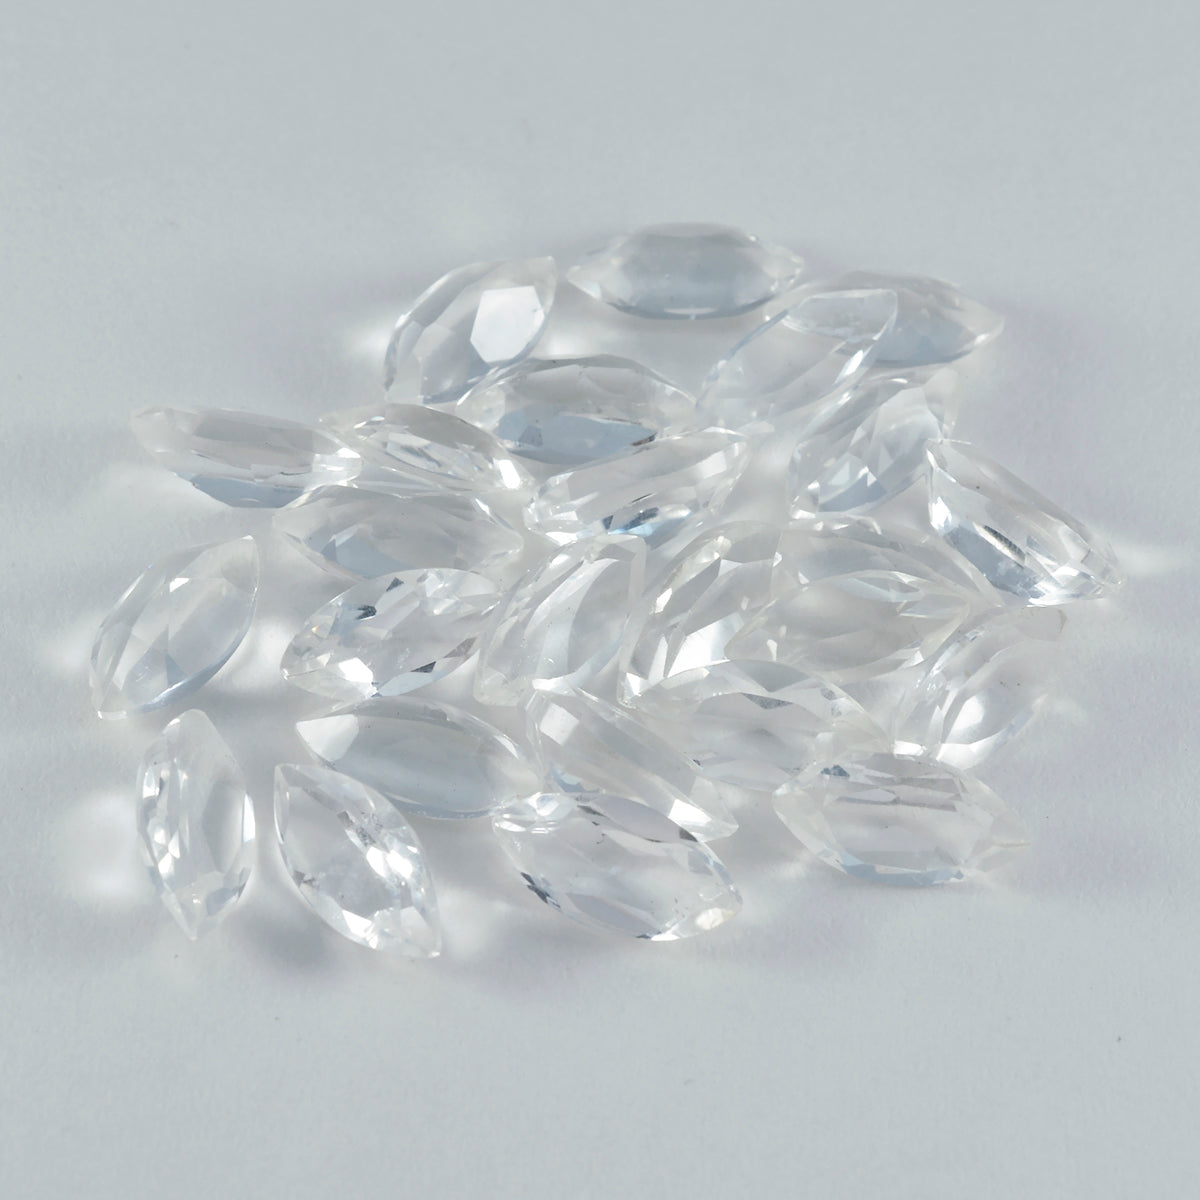 Riyogems 1 Stück weißer Kristallquarz, facettiert, 5 x 10 mm, Marquise-Form, Edelstein in AAA-Qualität